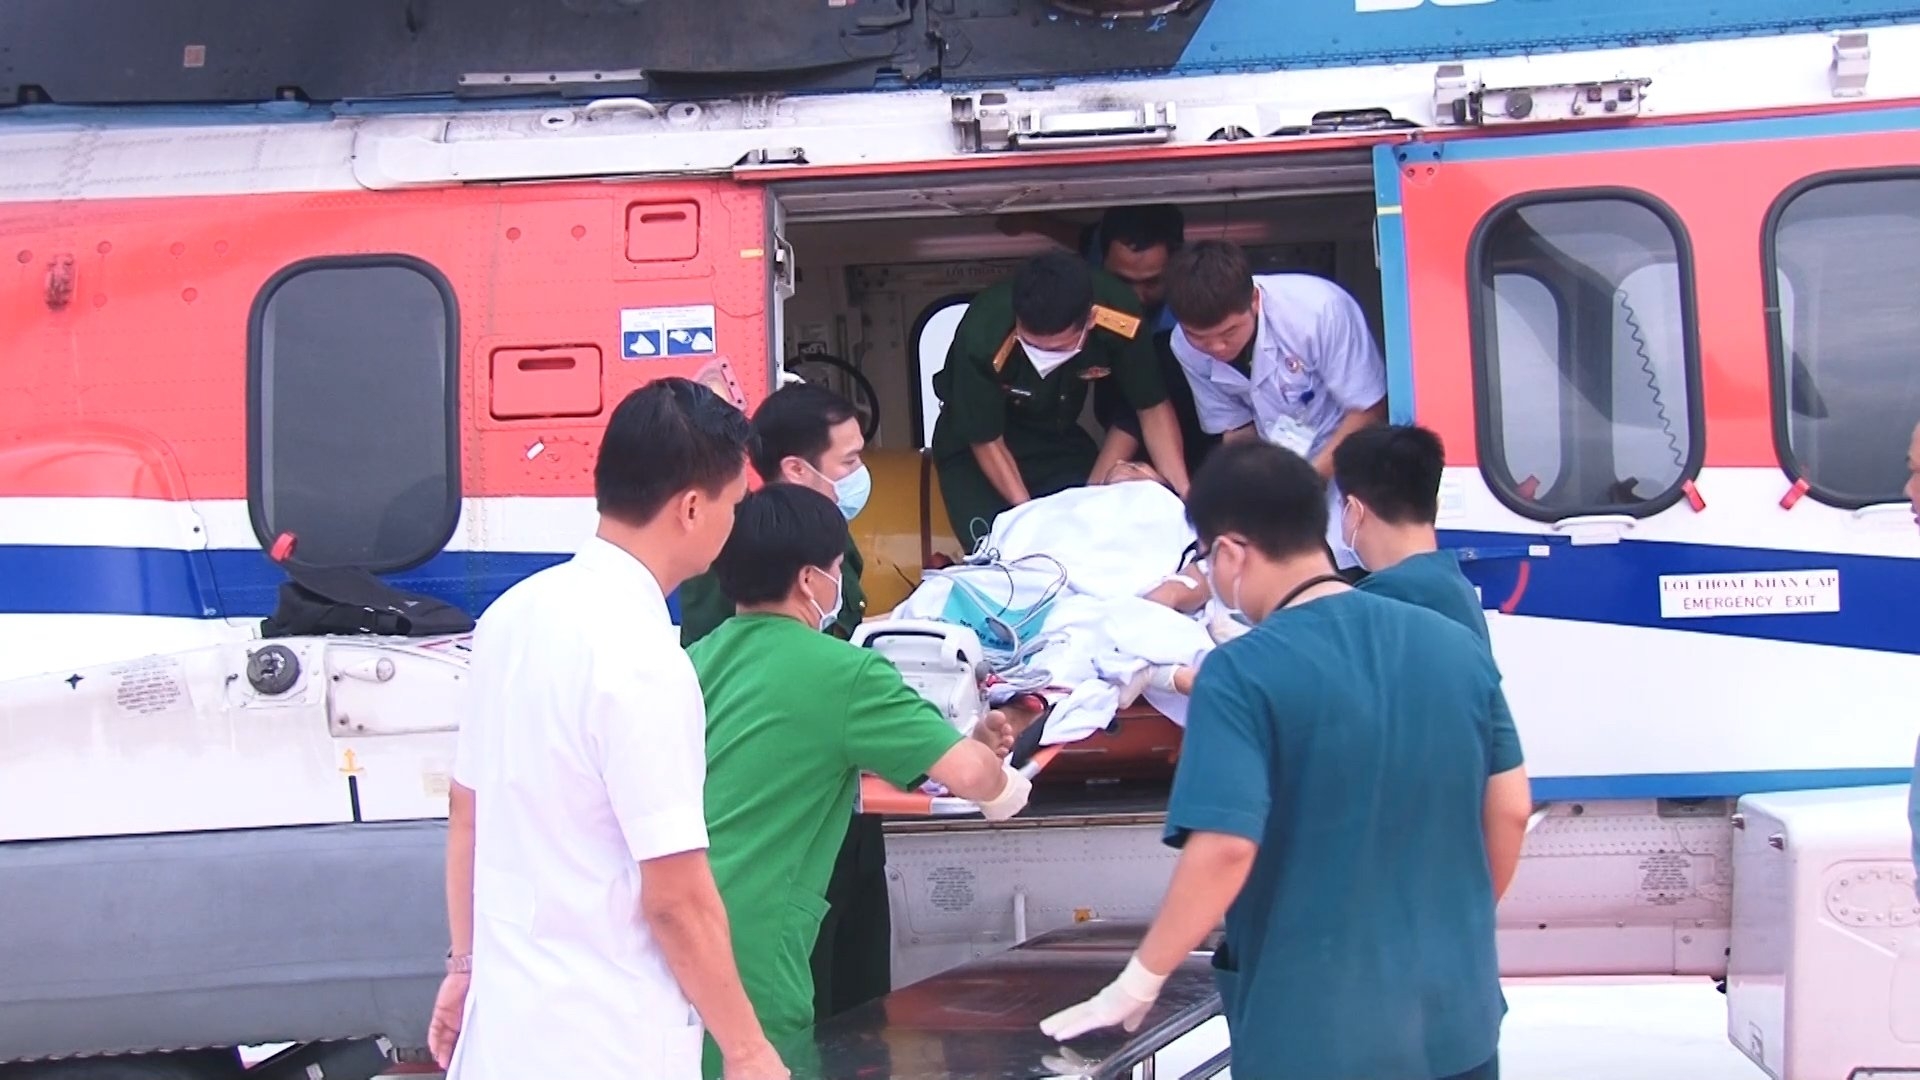 Bệnh viện Quân y 175 dùng trực thăng cấp cứu bệnh nhân đa chấn thương nặng từ đảo Trường Sa vào đất liền điều trị